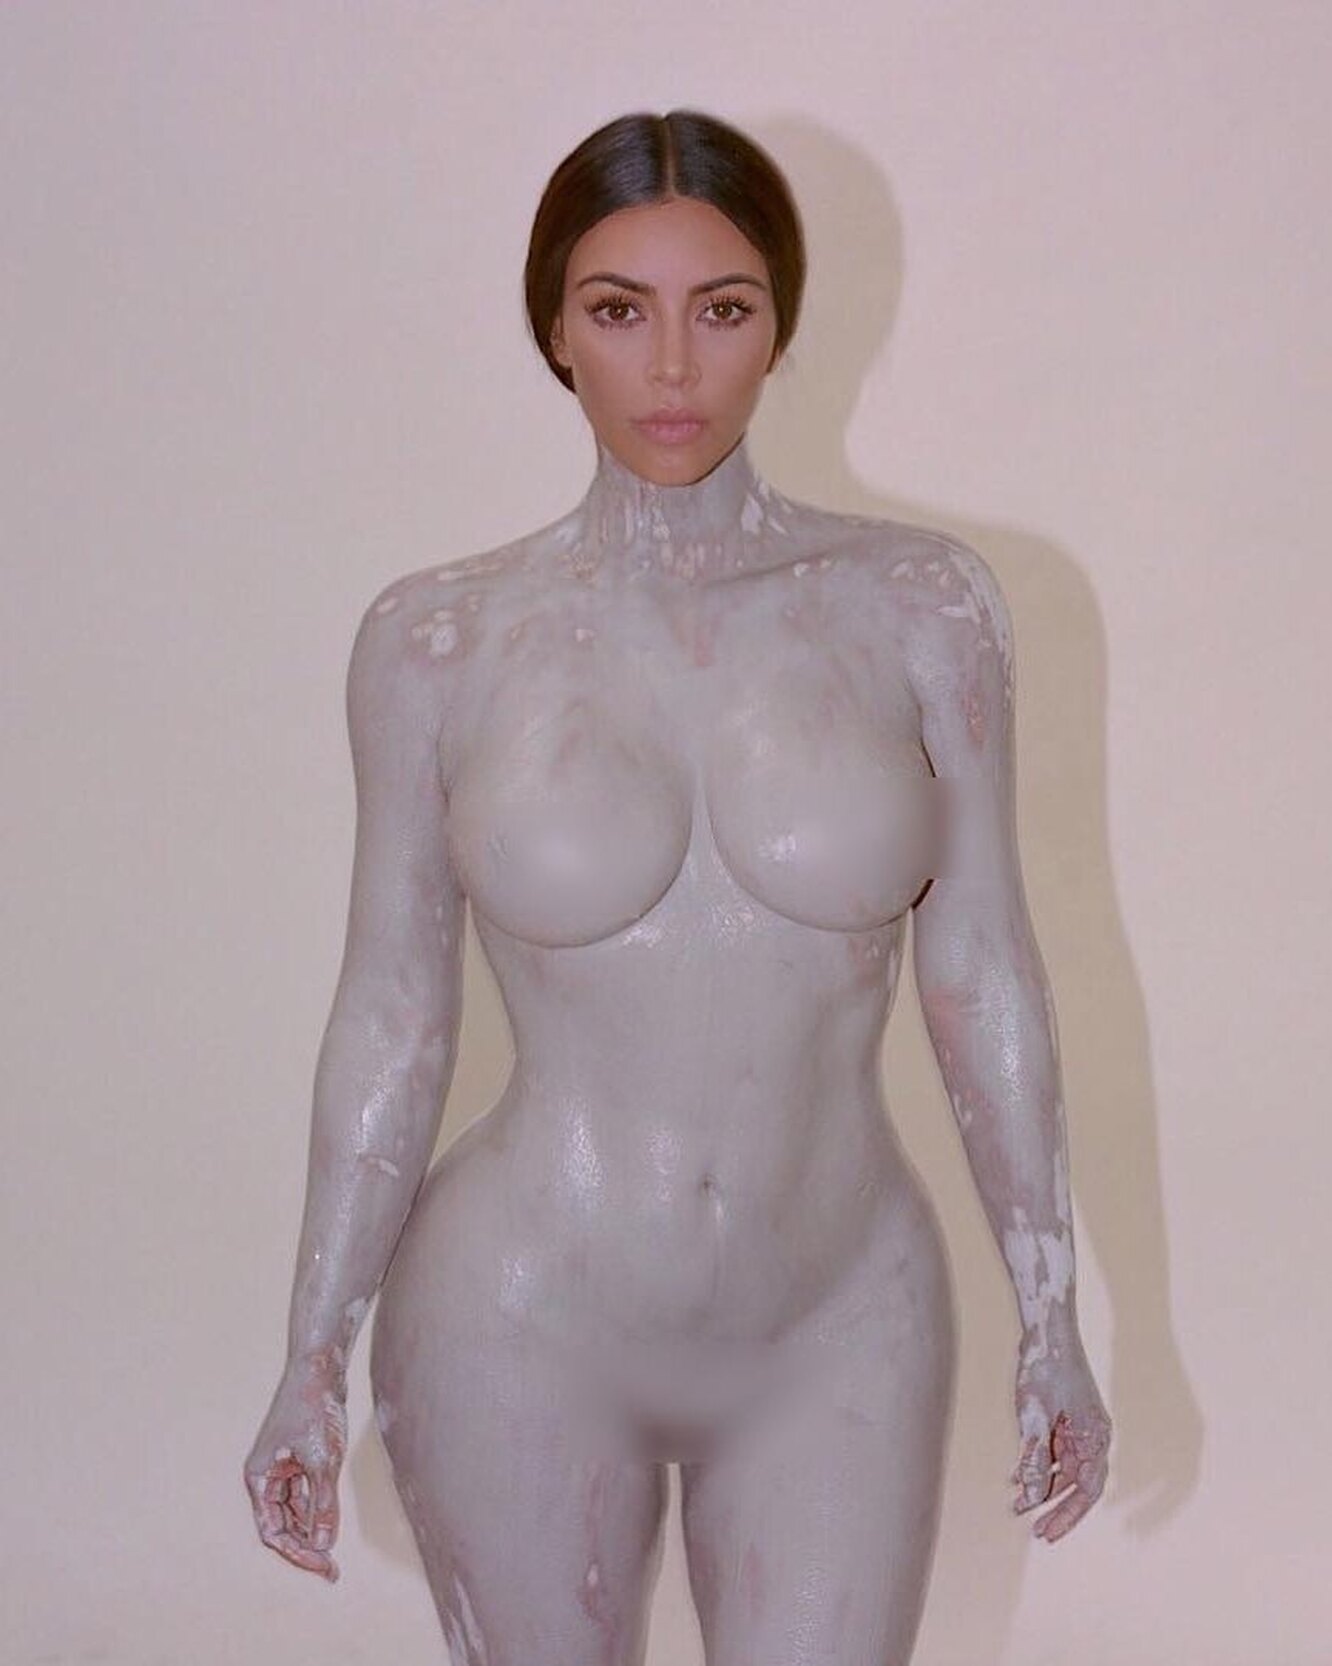 Ким Кардашьян в фотосессии с голым мужчиной, и это не Канье Уэст.